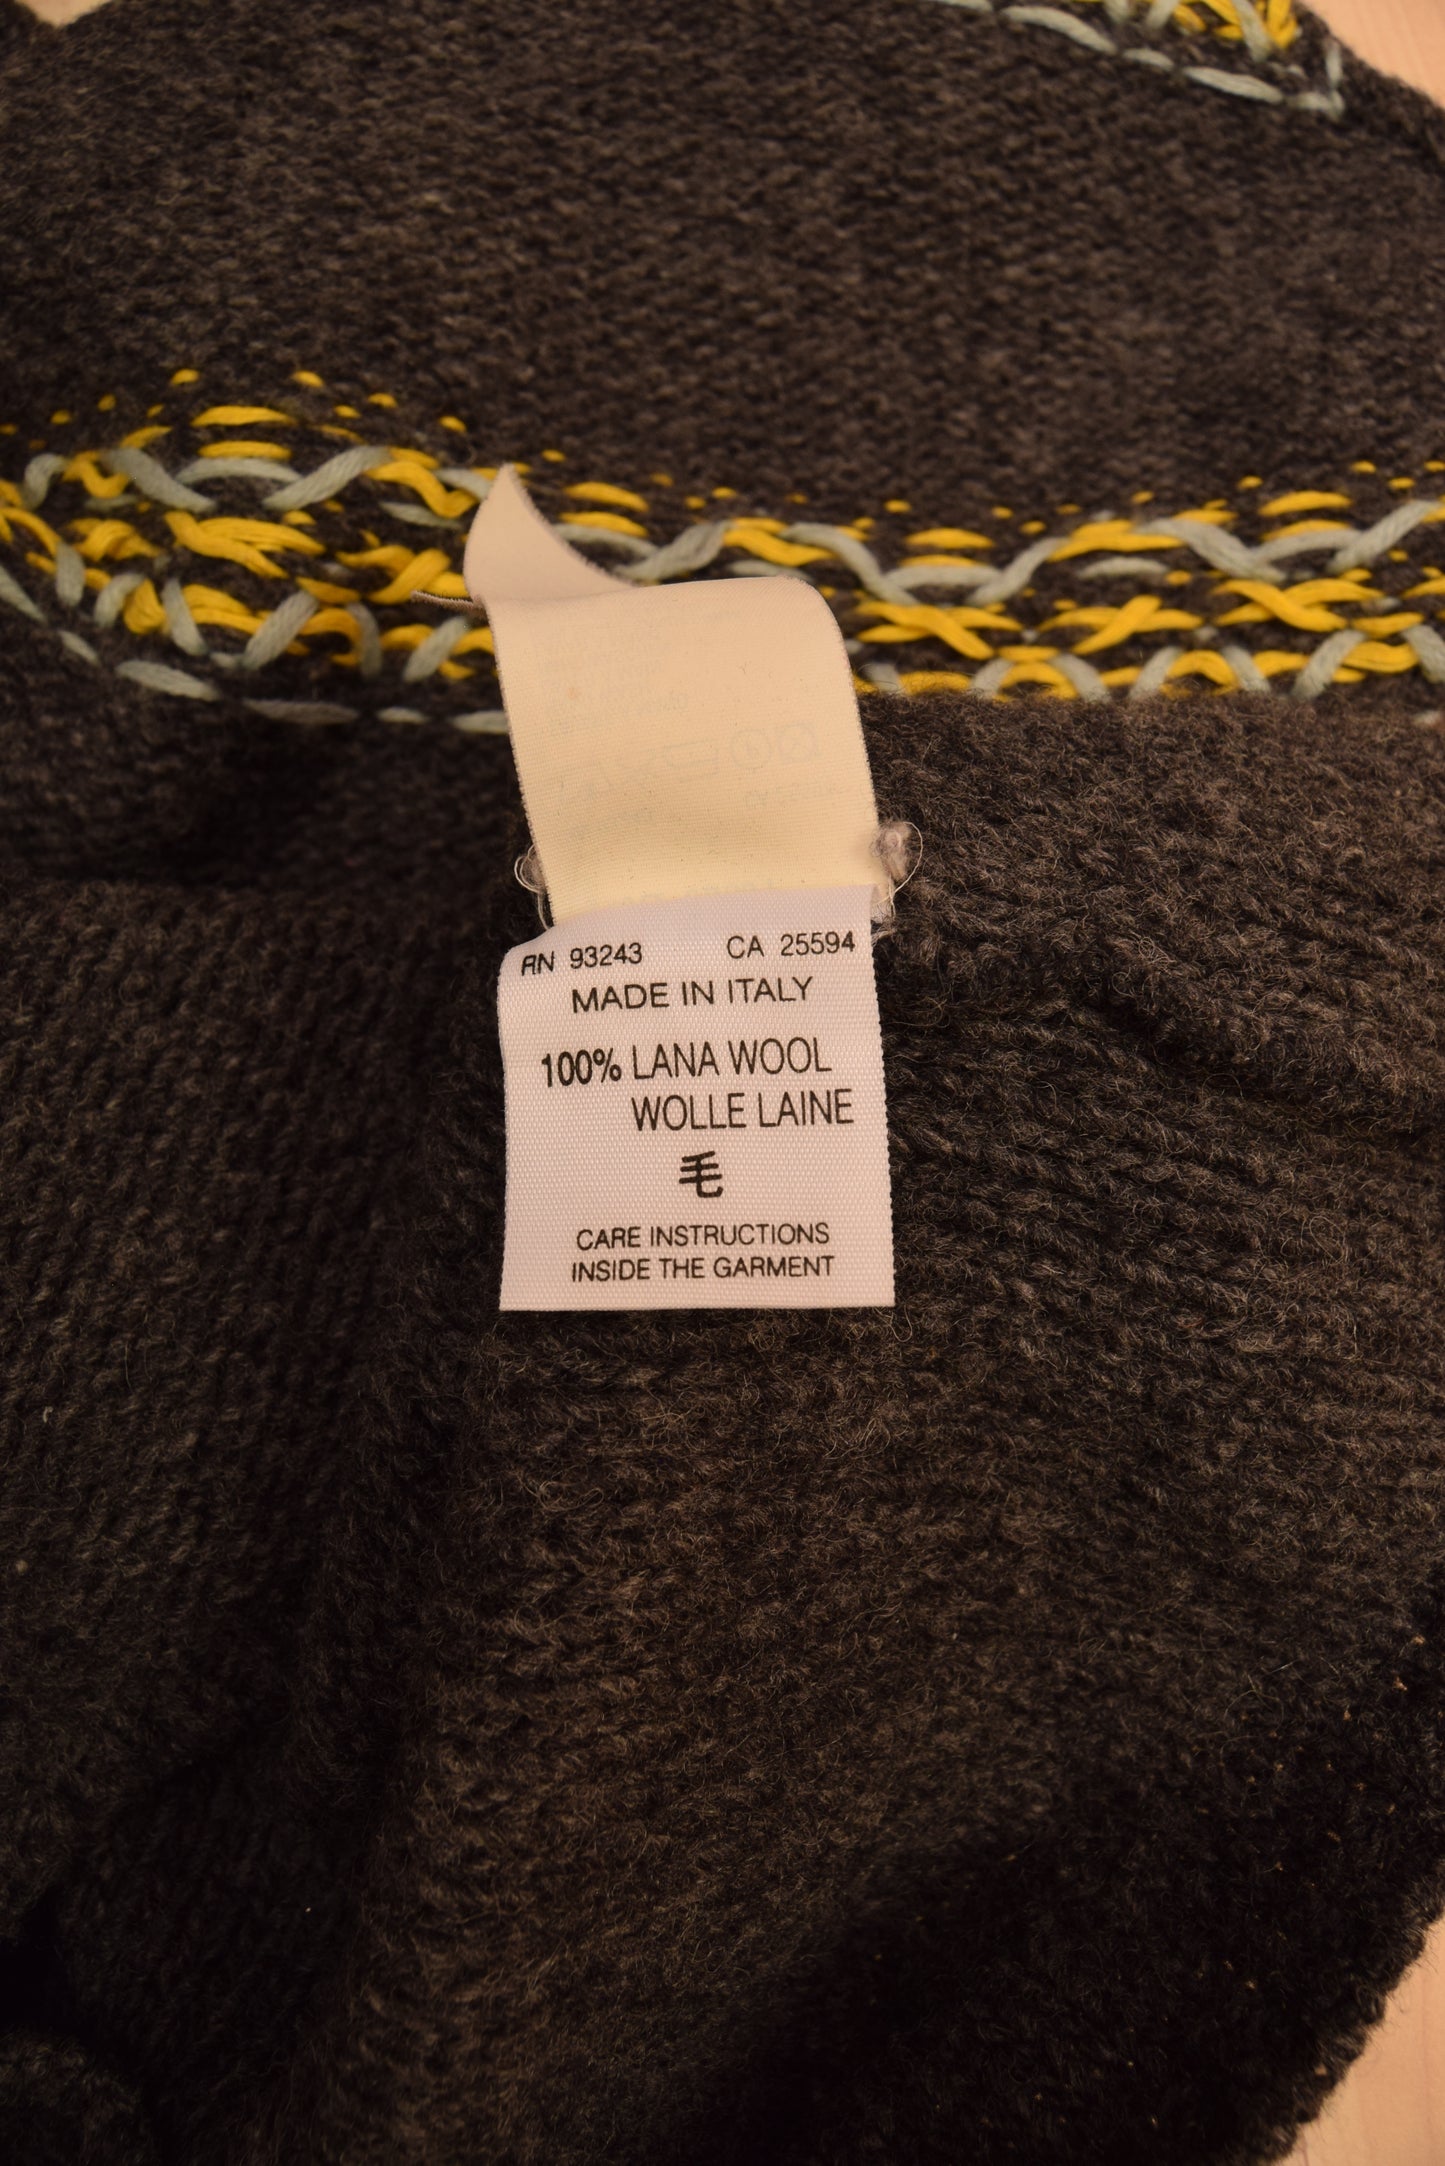 Y2K Diesel Vest 100% Wool Made in Italy Grey Size M